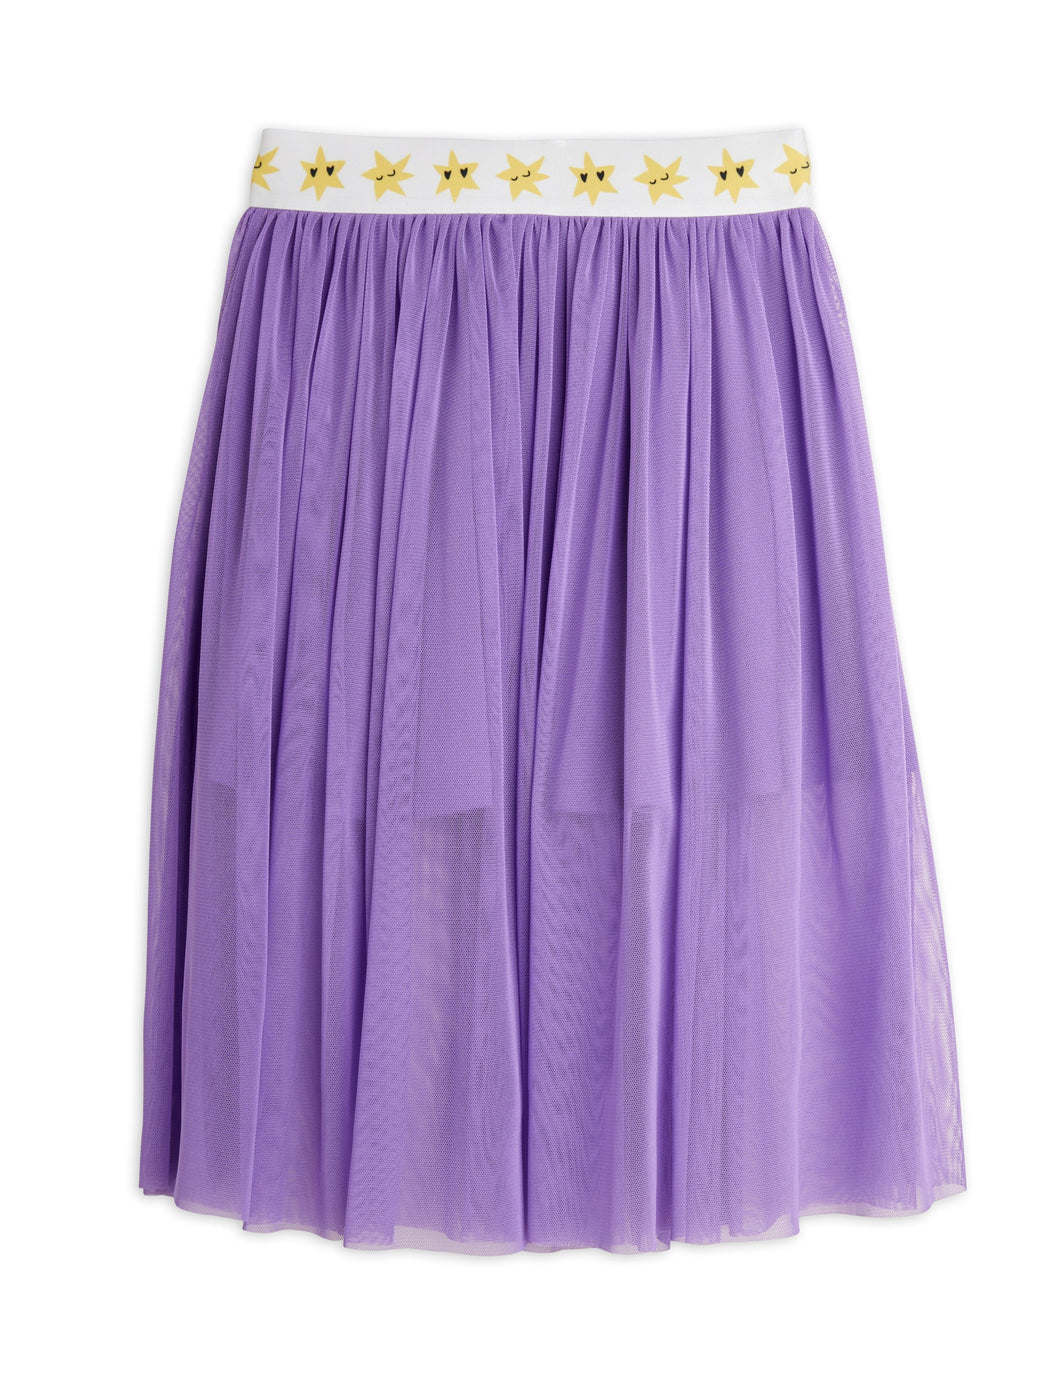 Star Long Tulle Skirt